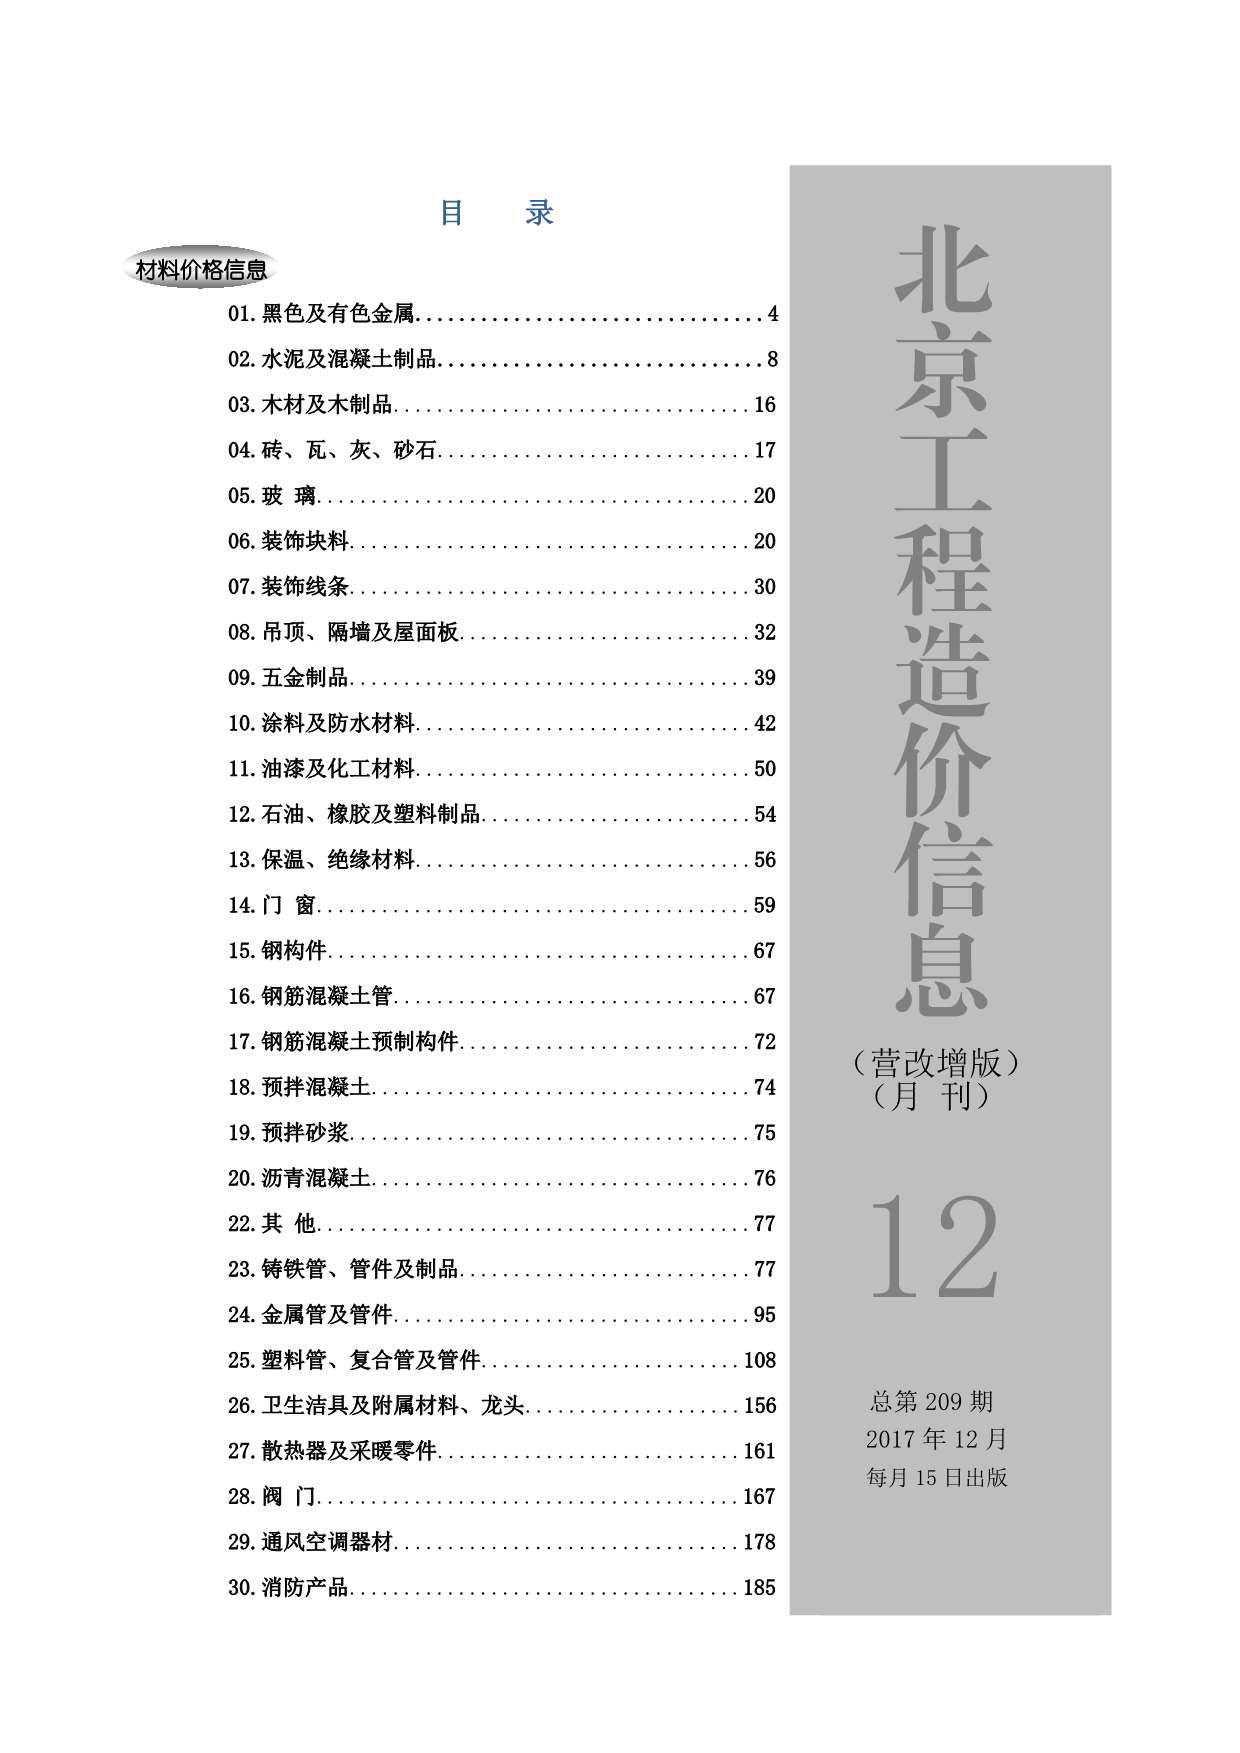 北京市2017年12月建材价格依据